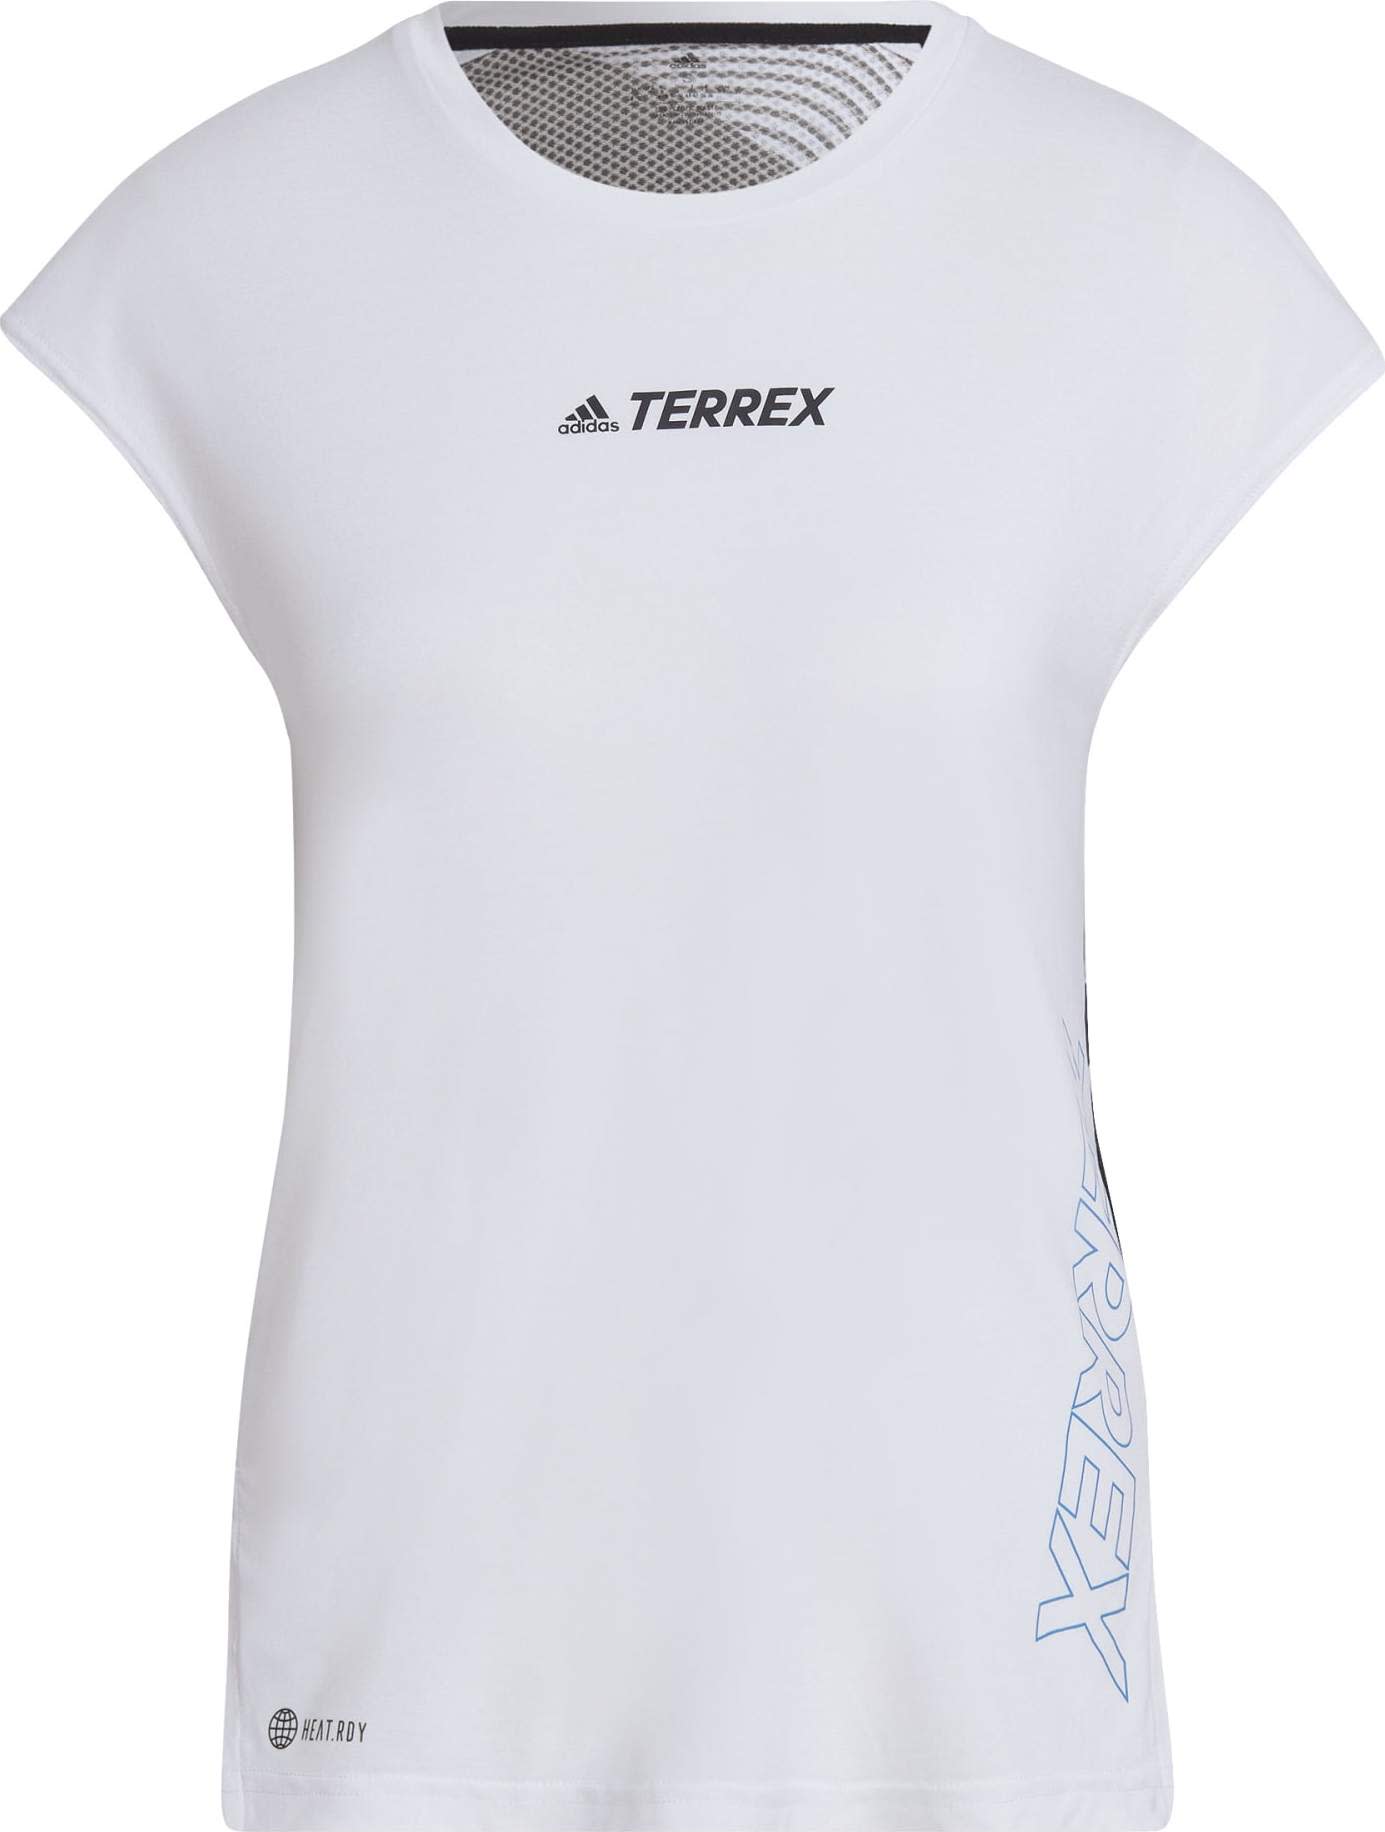 Adidas Adidas Women's Terrex Agravic Pro Top White L, WHITE